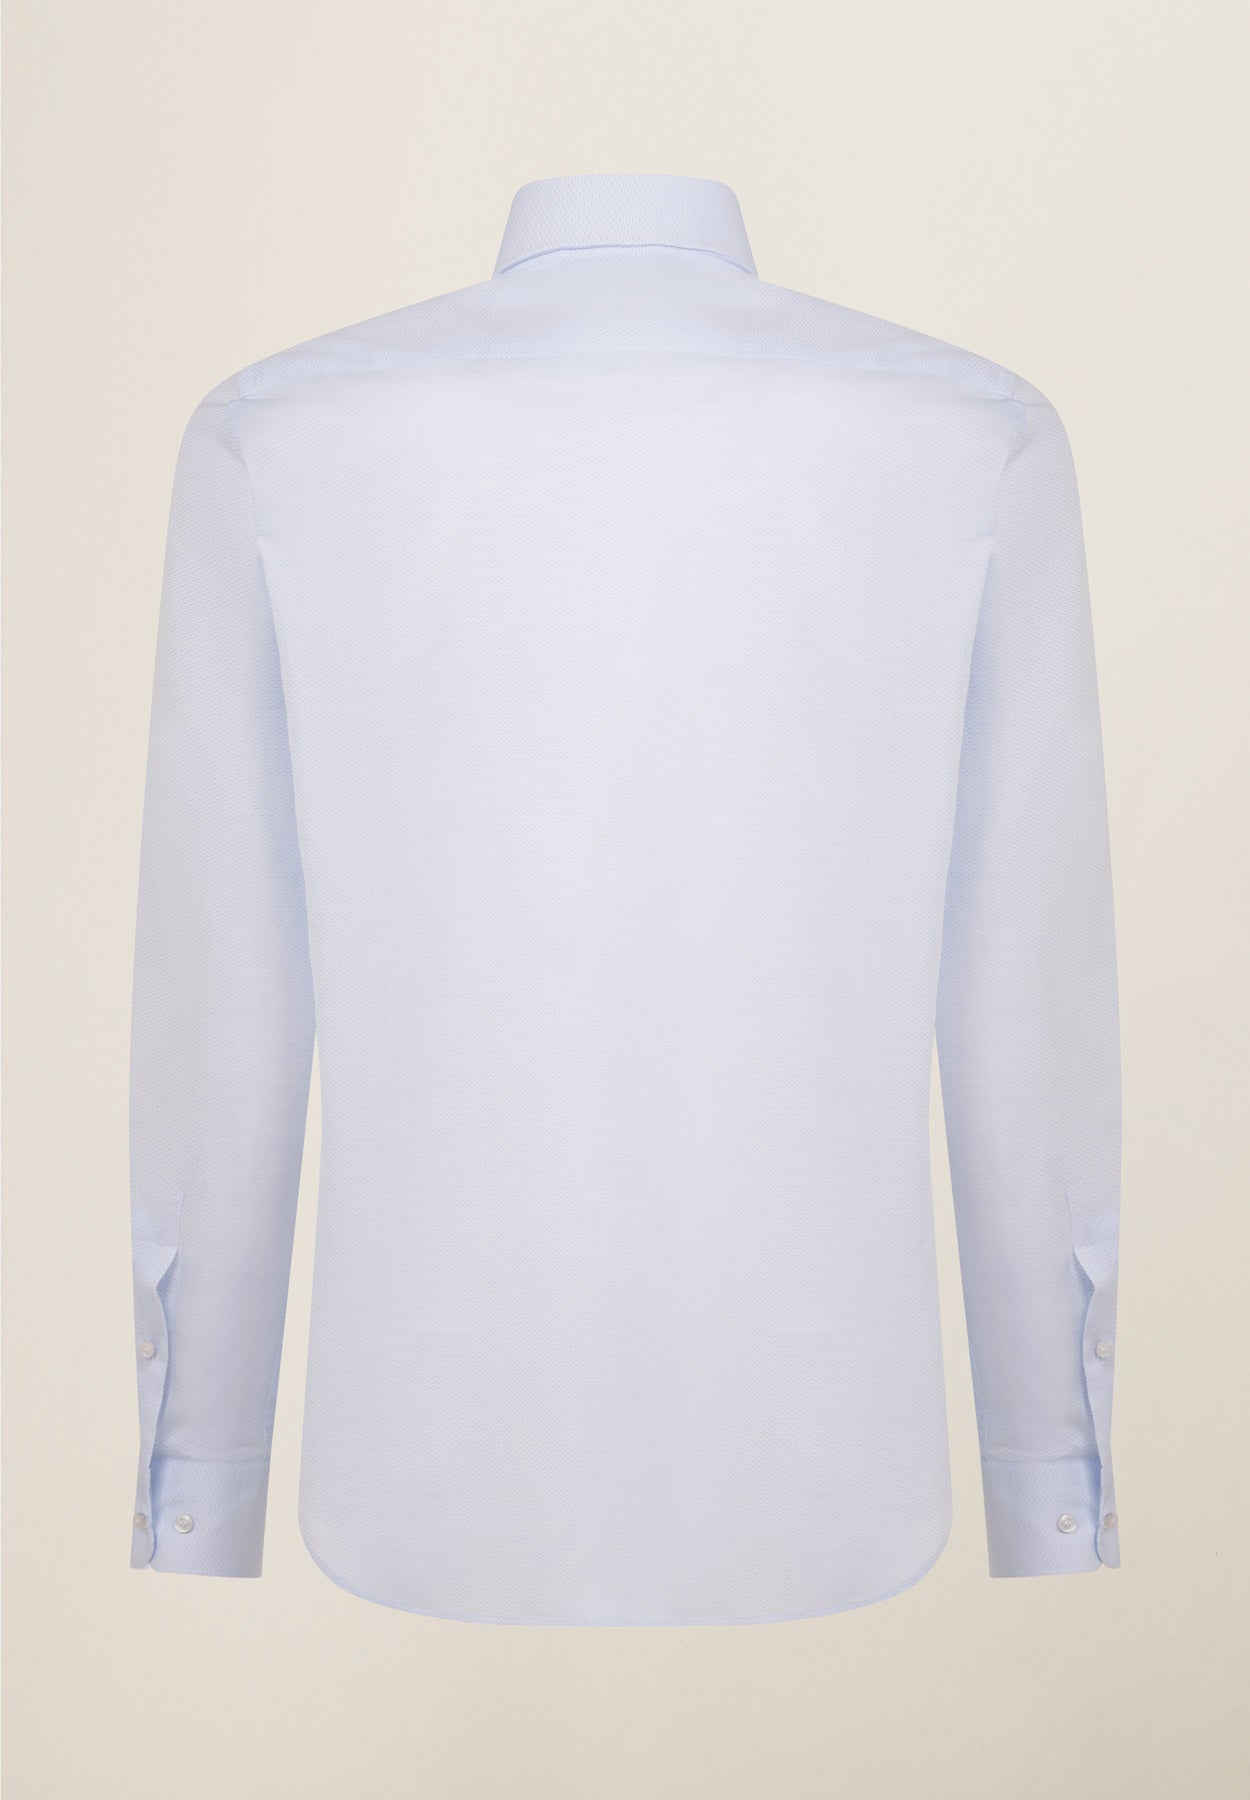 Hellblaues Baumwollhemd mit Mikrodesign in normaler Passform